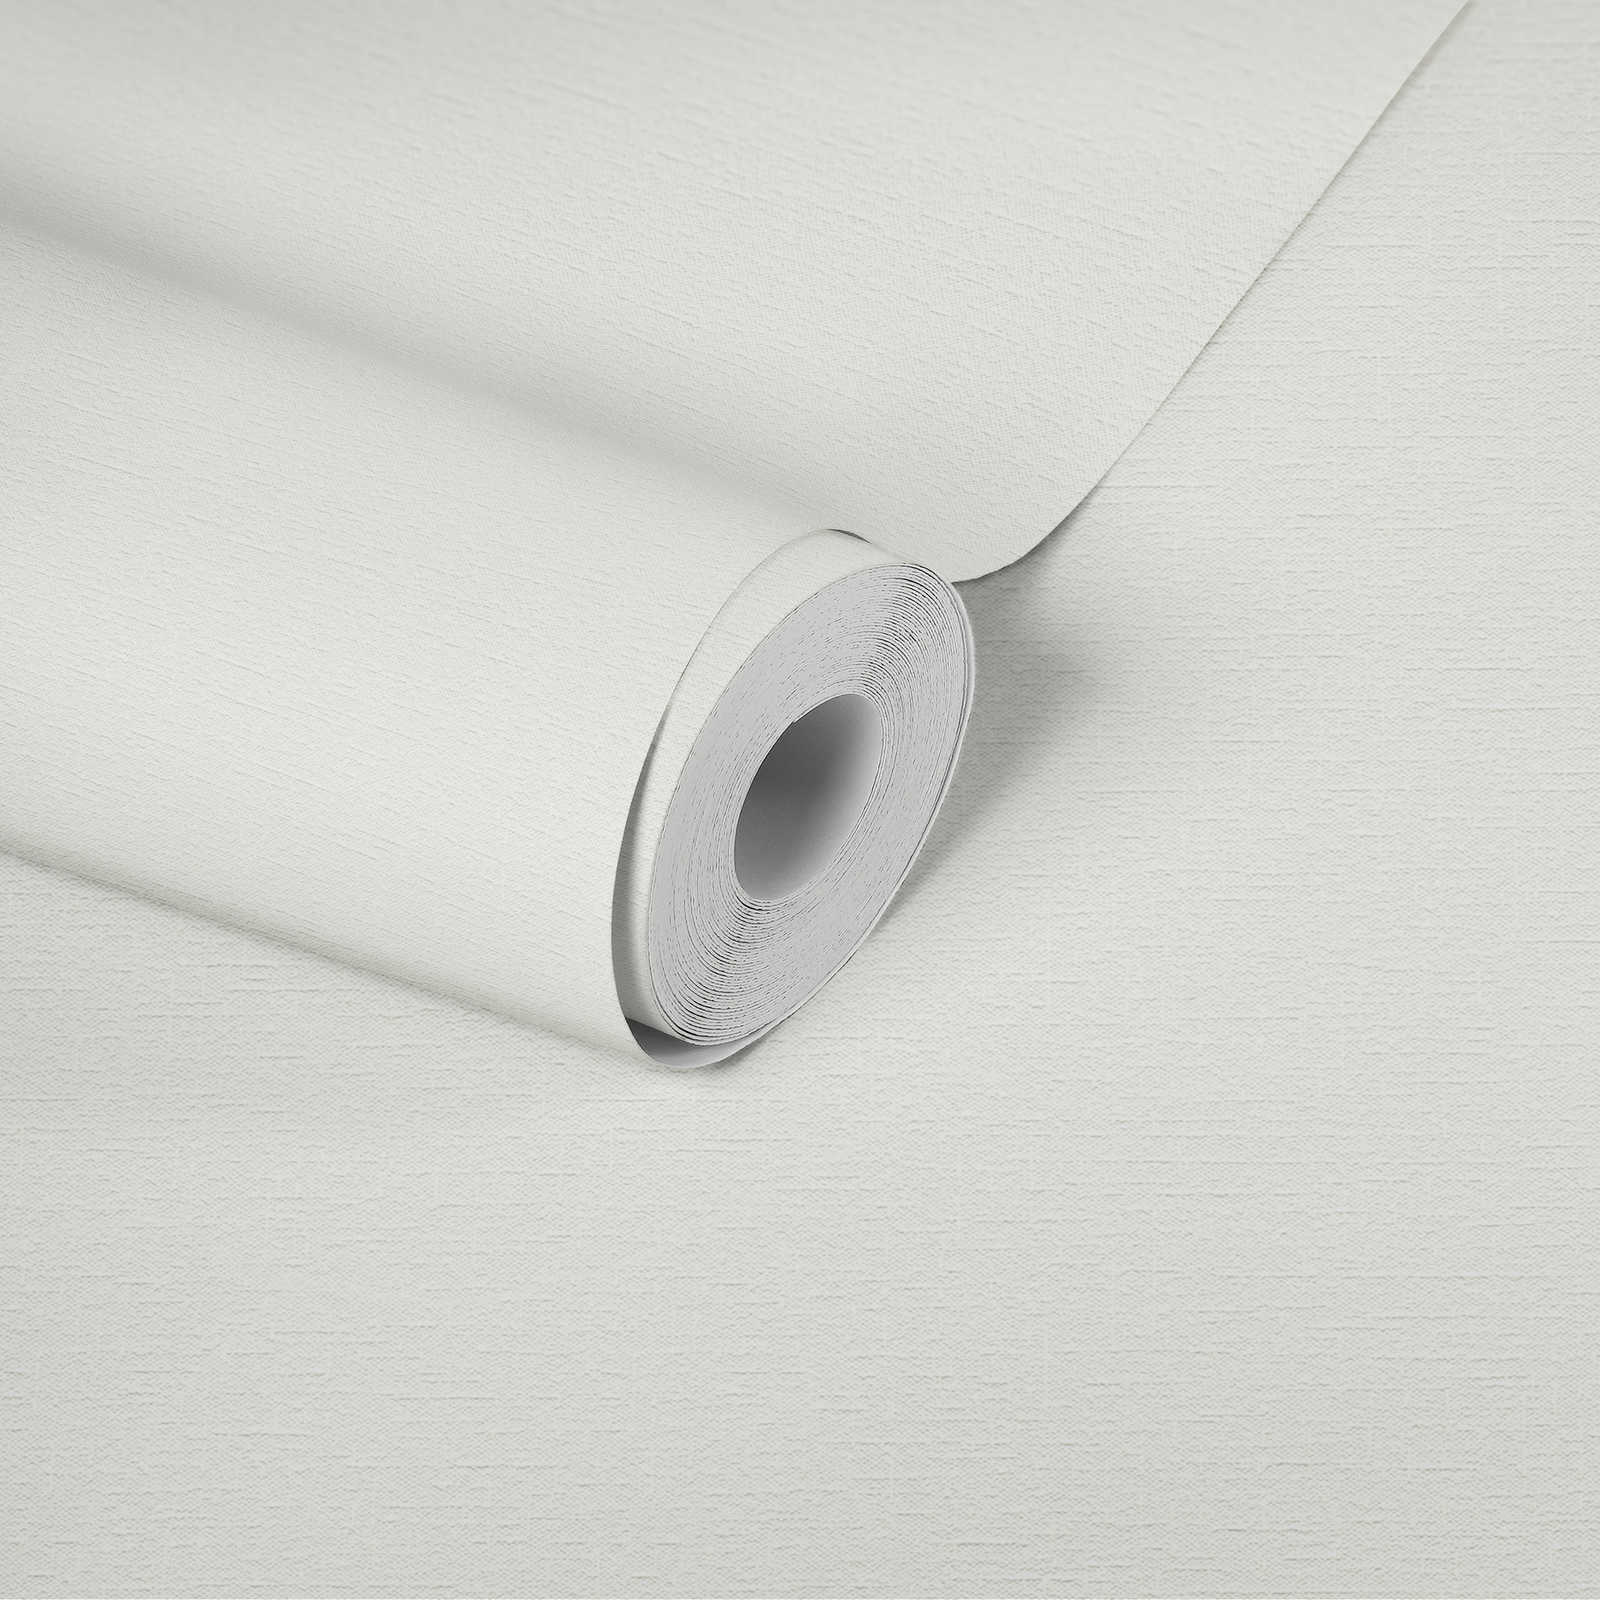             Papel pintado blanco no tejido con estructura textil
        